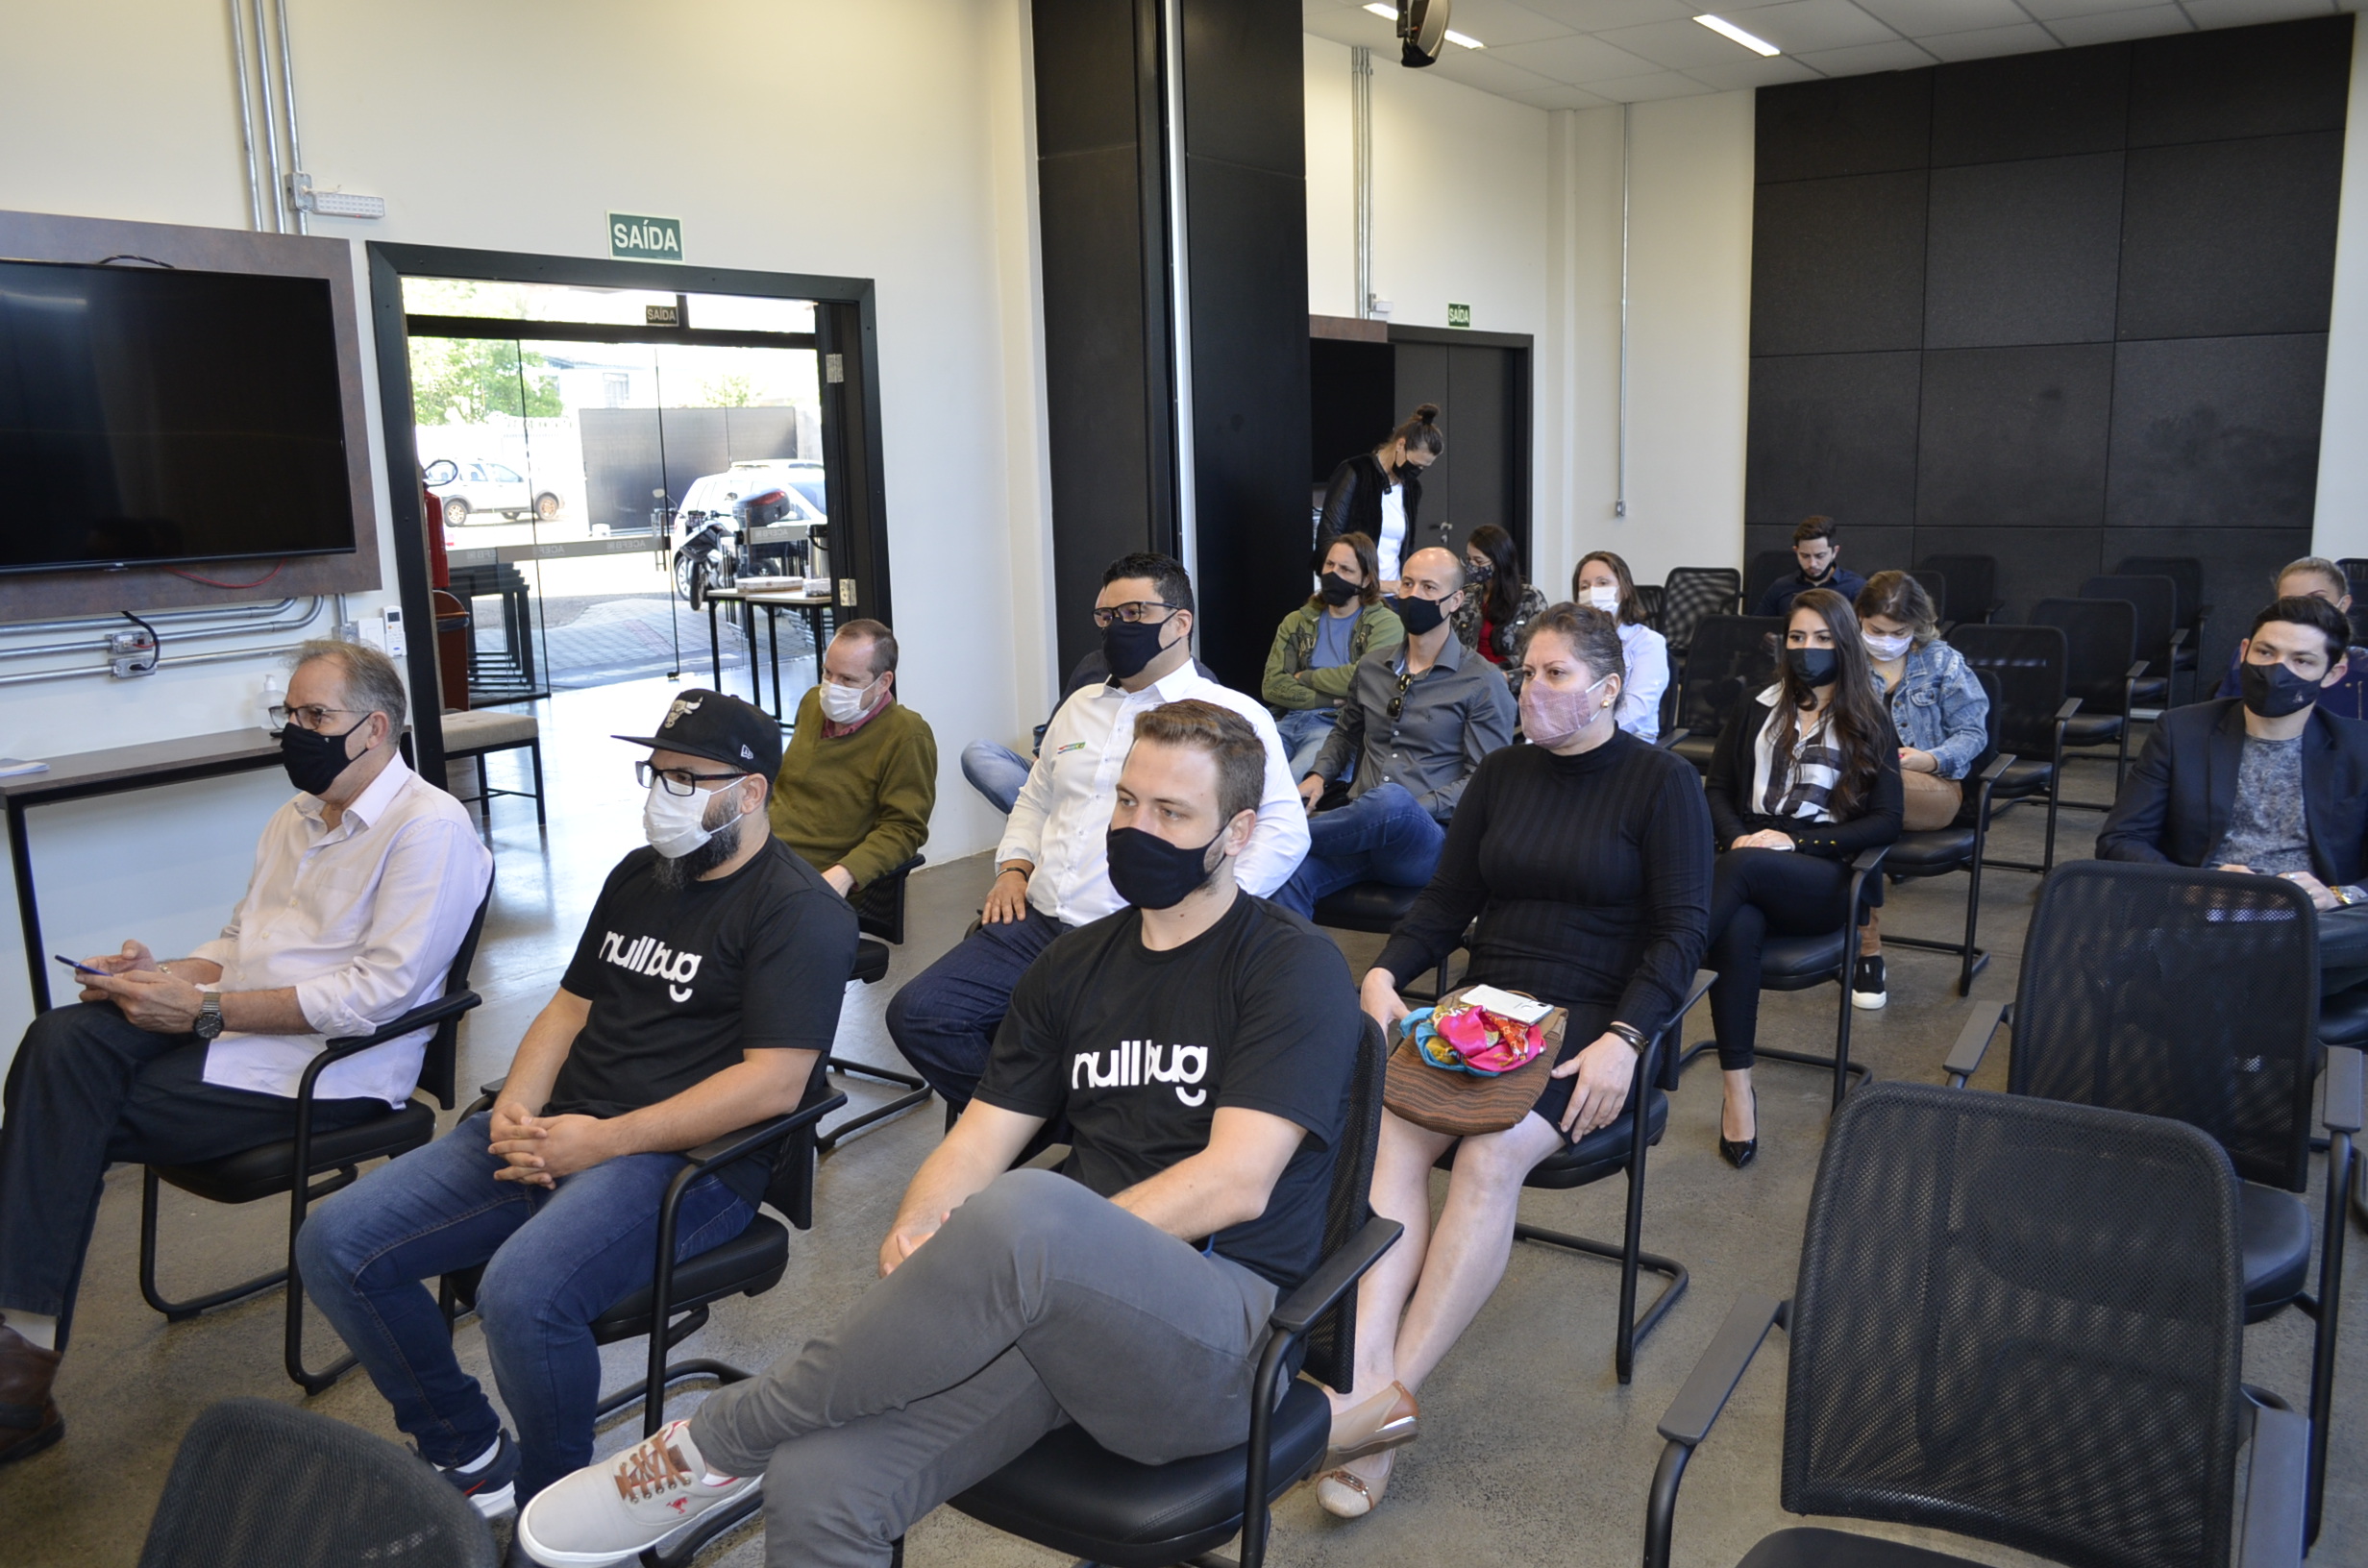 Histórias reais de startups de sucesso no Café Acefb Tech desta semana